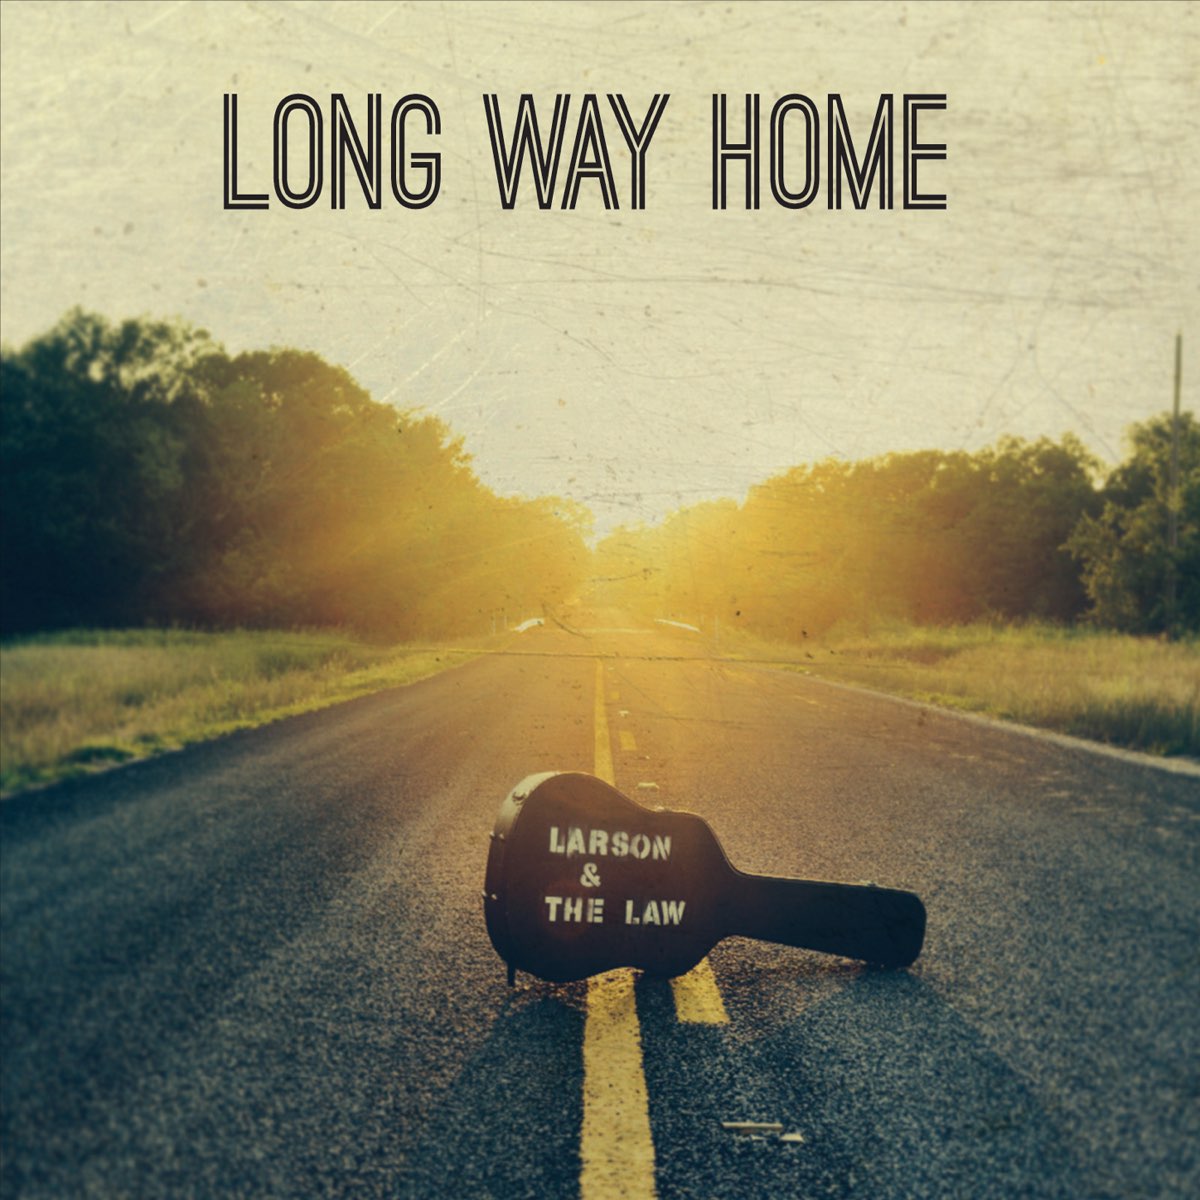 This long way. Long way Home. The way Home. Way to Home. Way way way.